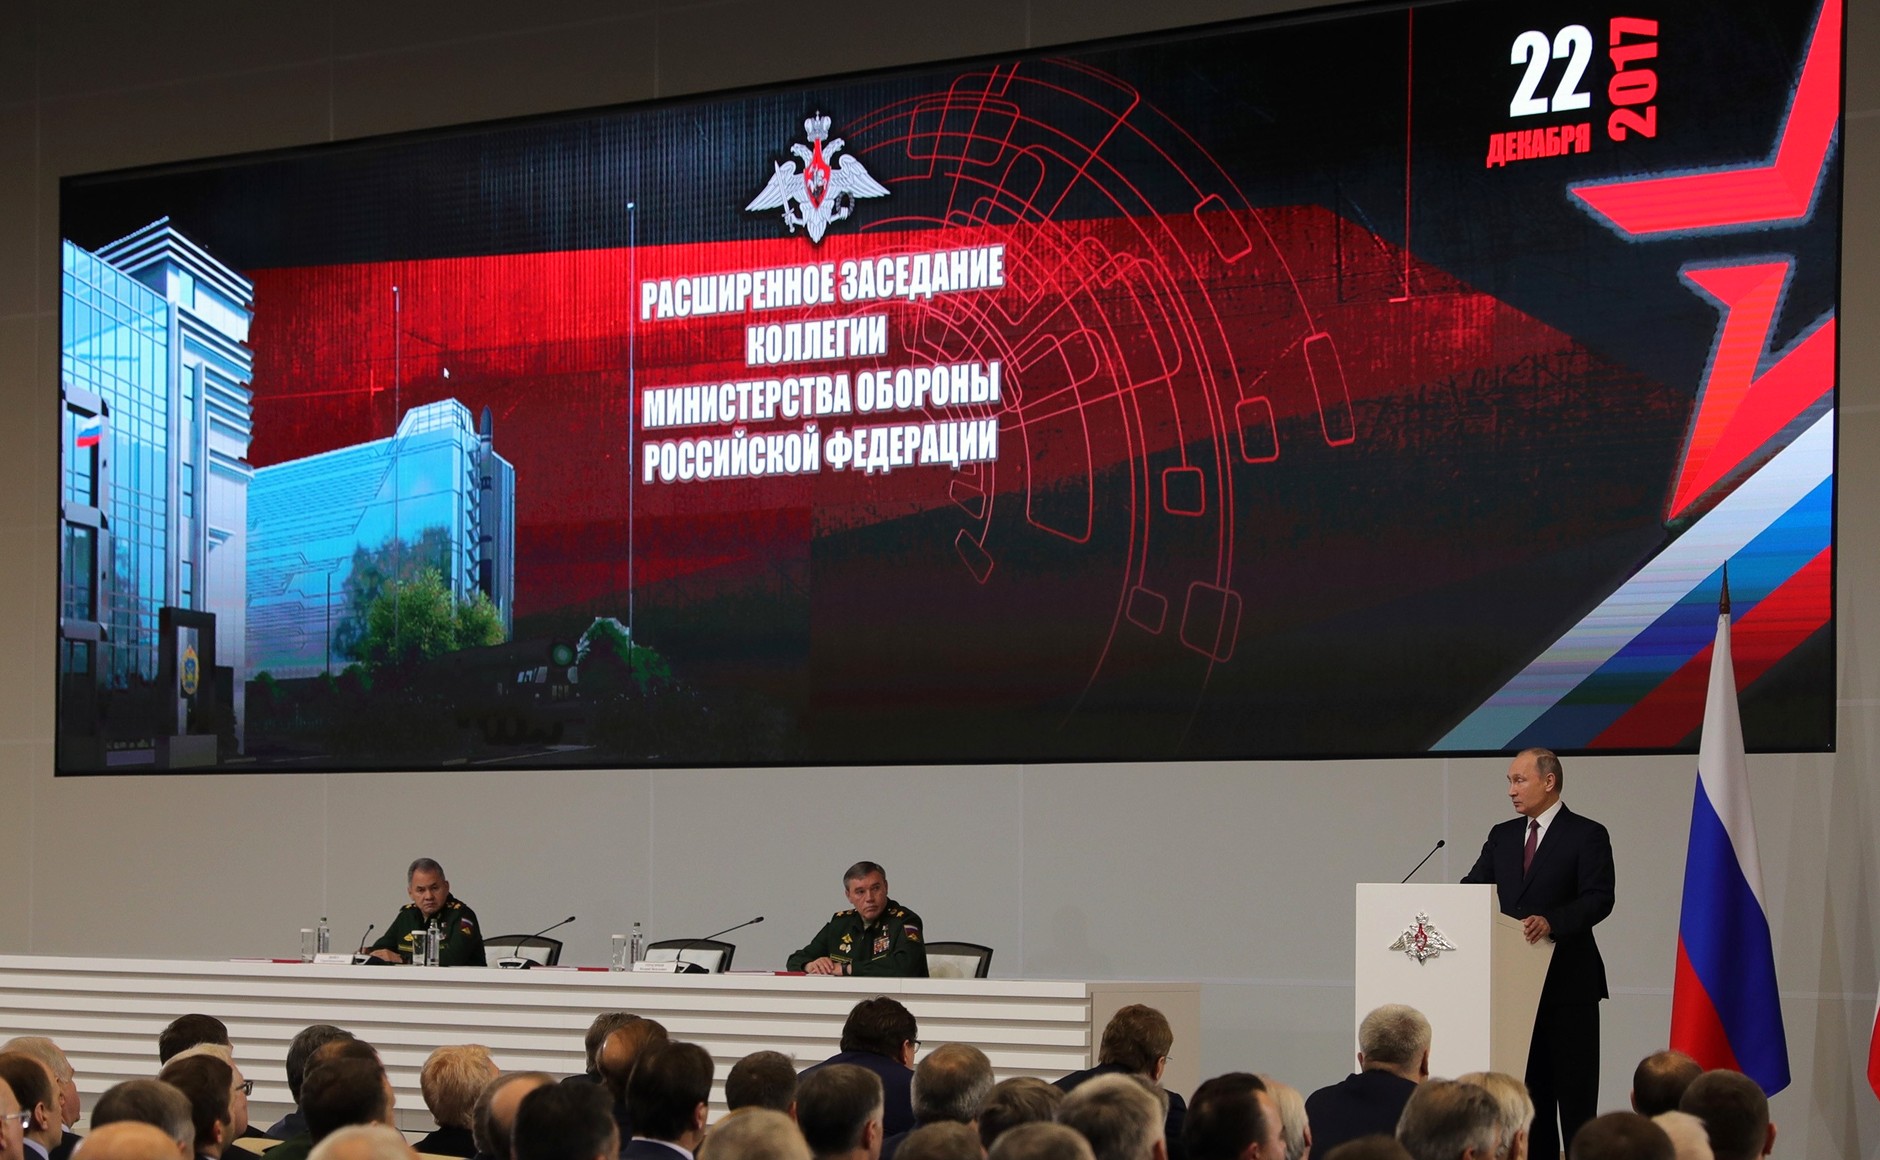 Расширенное заседание Коллегии Министерства обороны Российской Федерации прошло в Балашихе Московской области